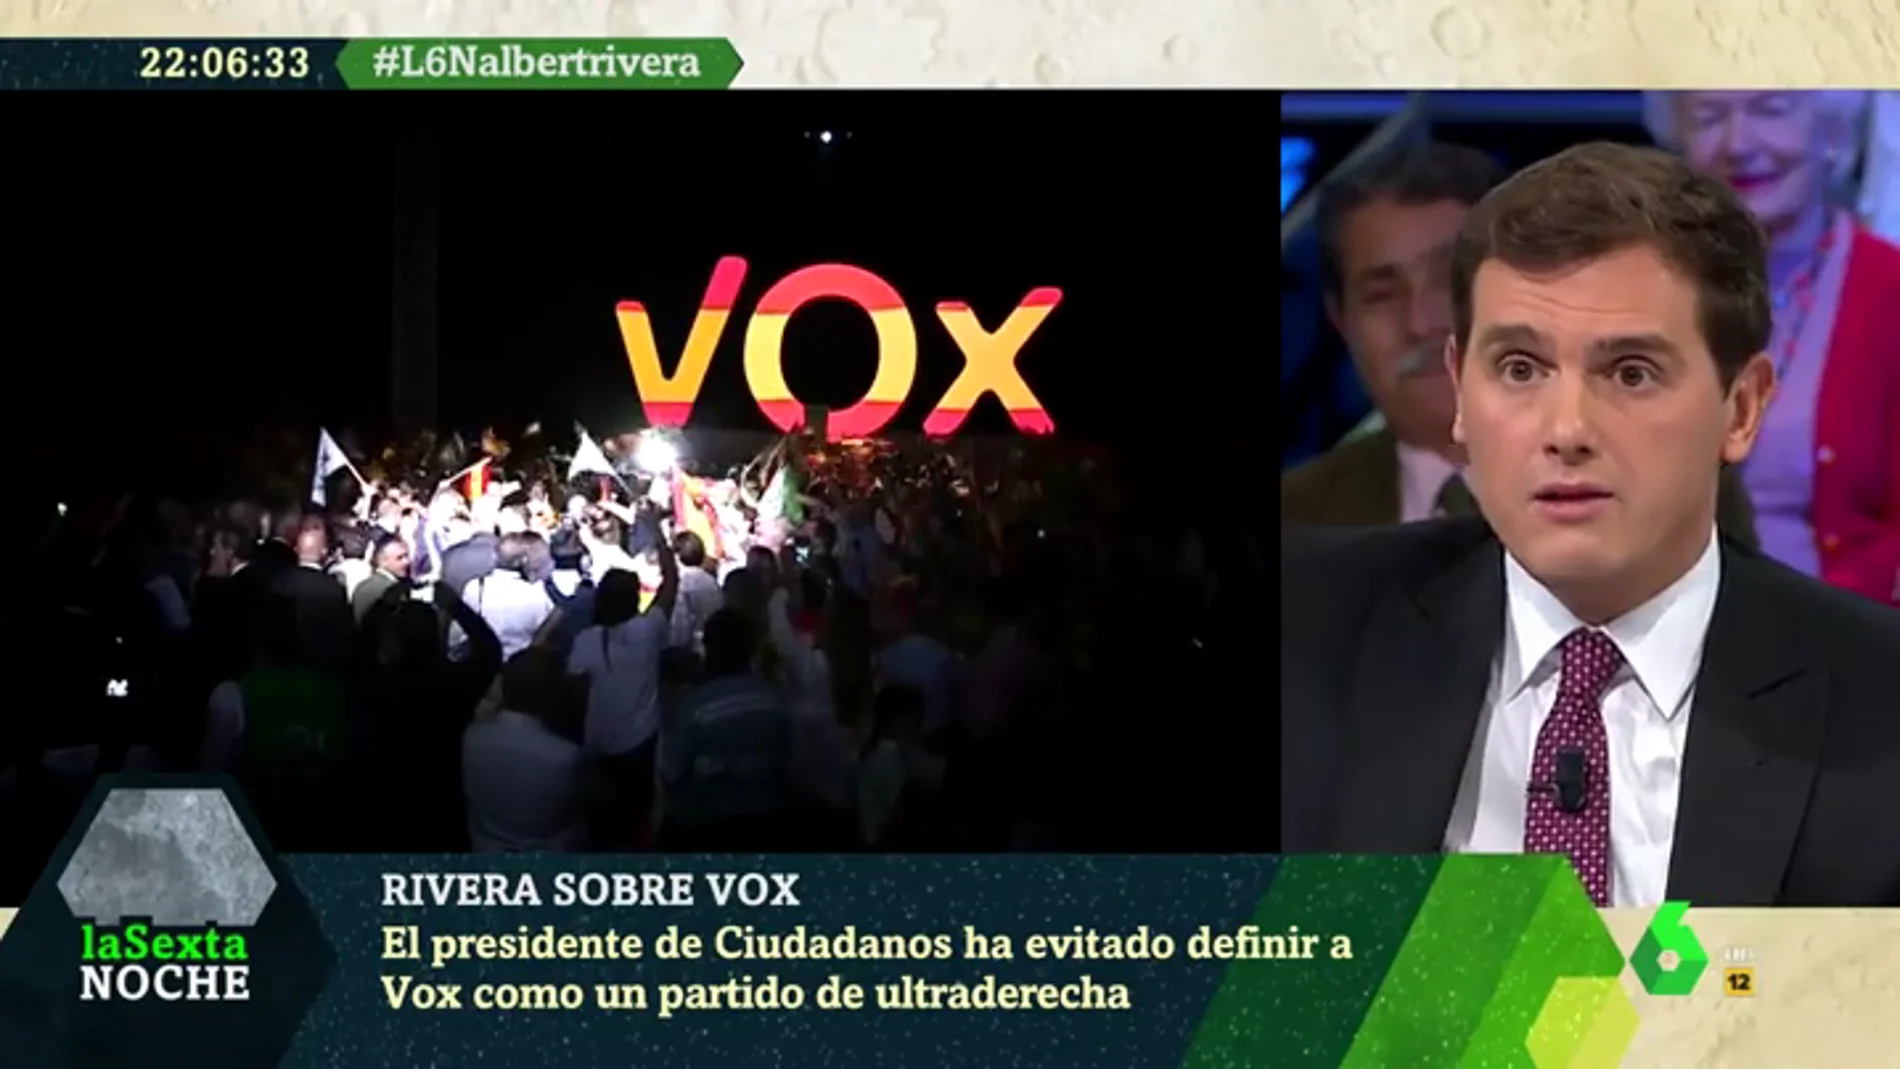 Rivera evita definir a VOX como ultraderecha: "Es conservador, nadie piensa que es de extrema izquierda"